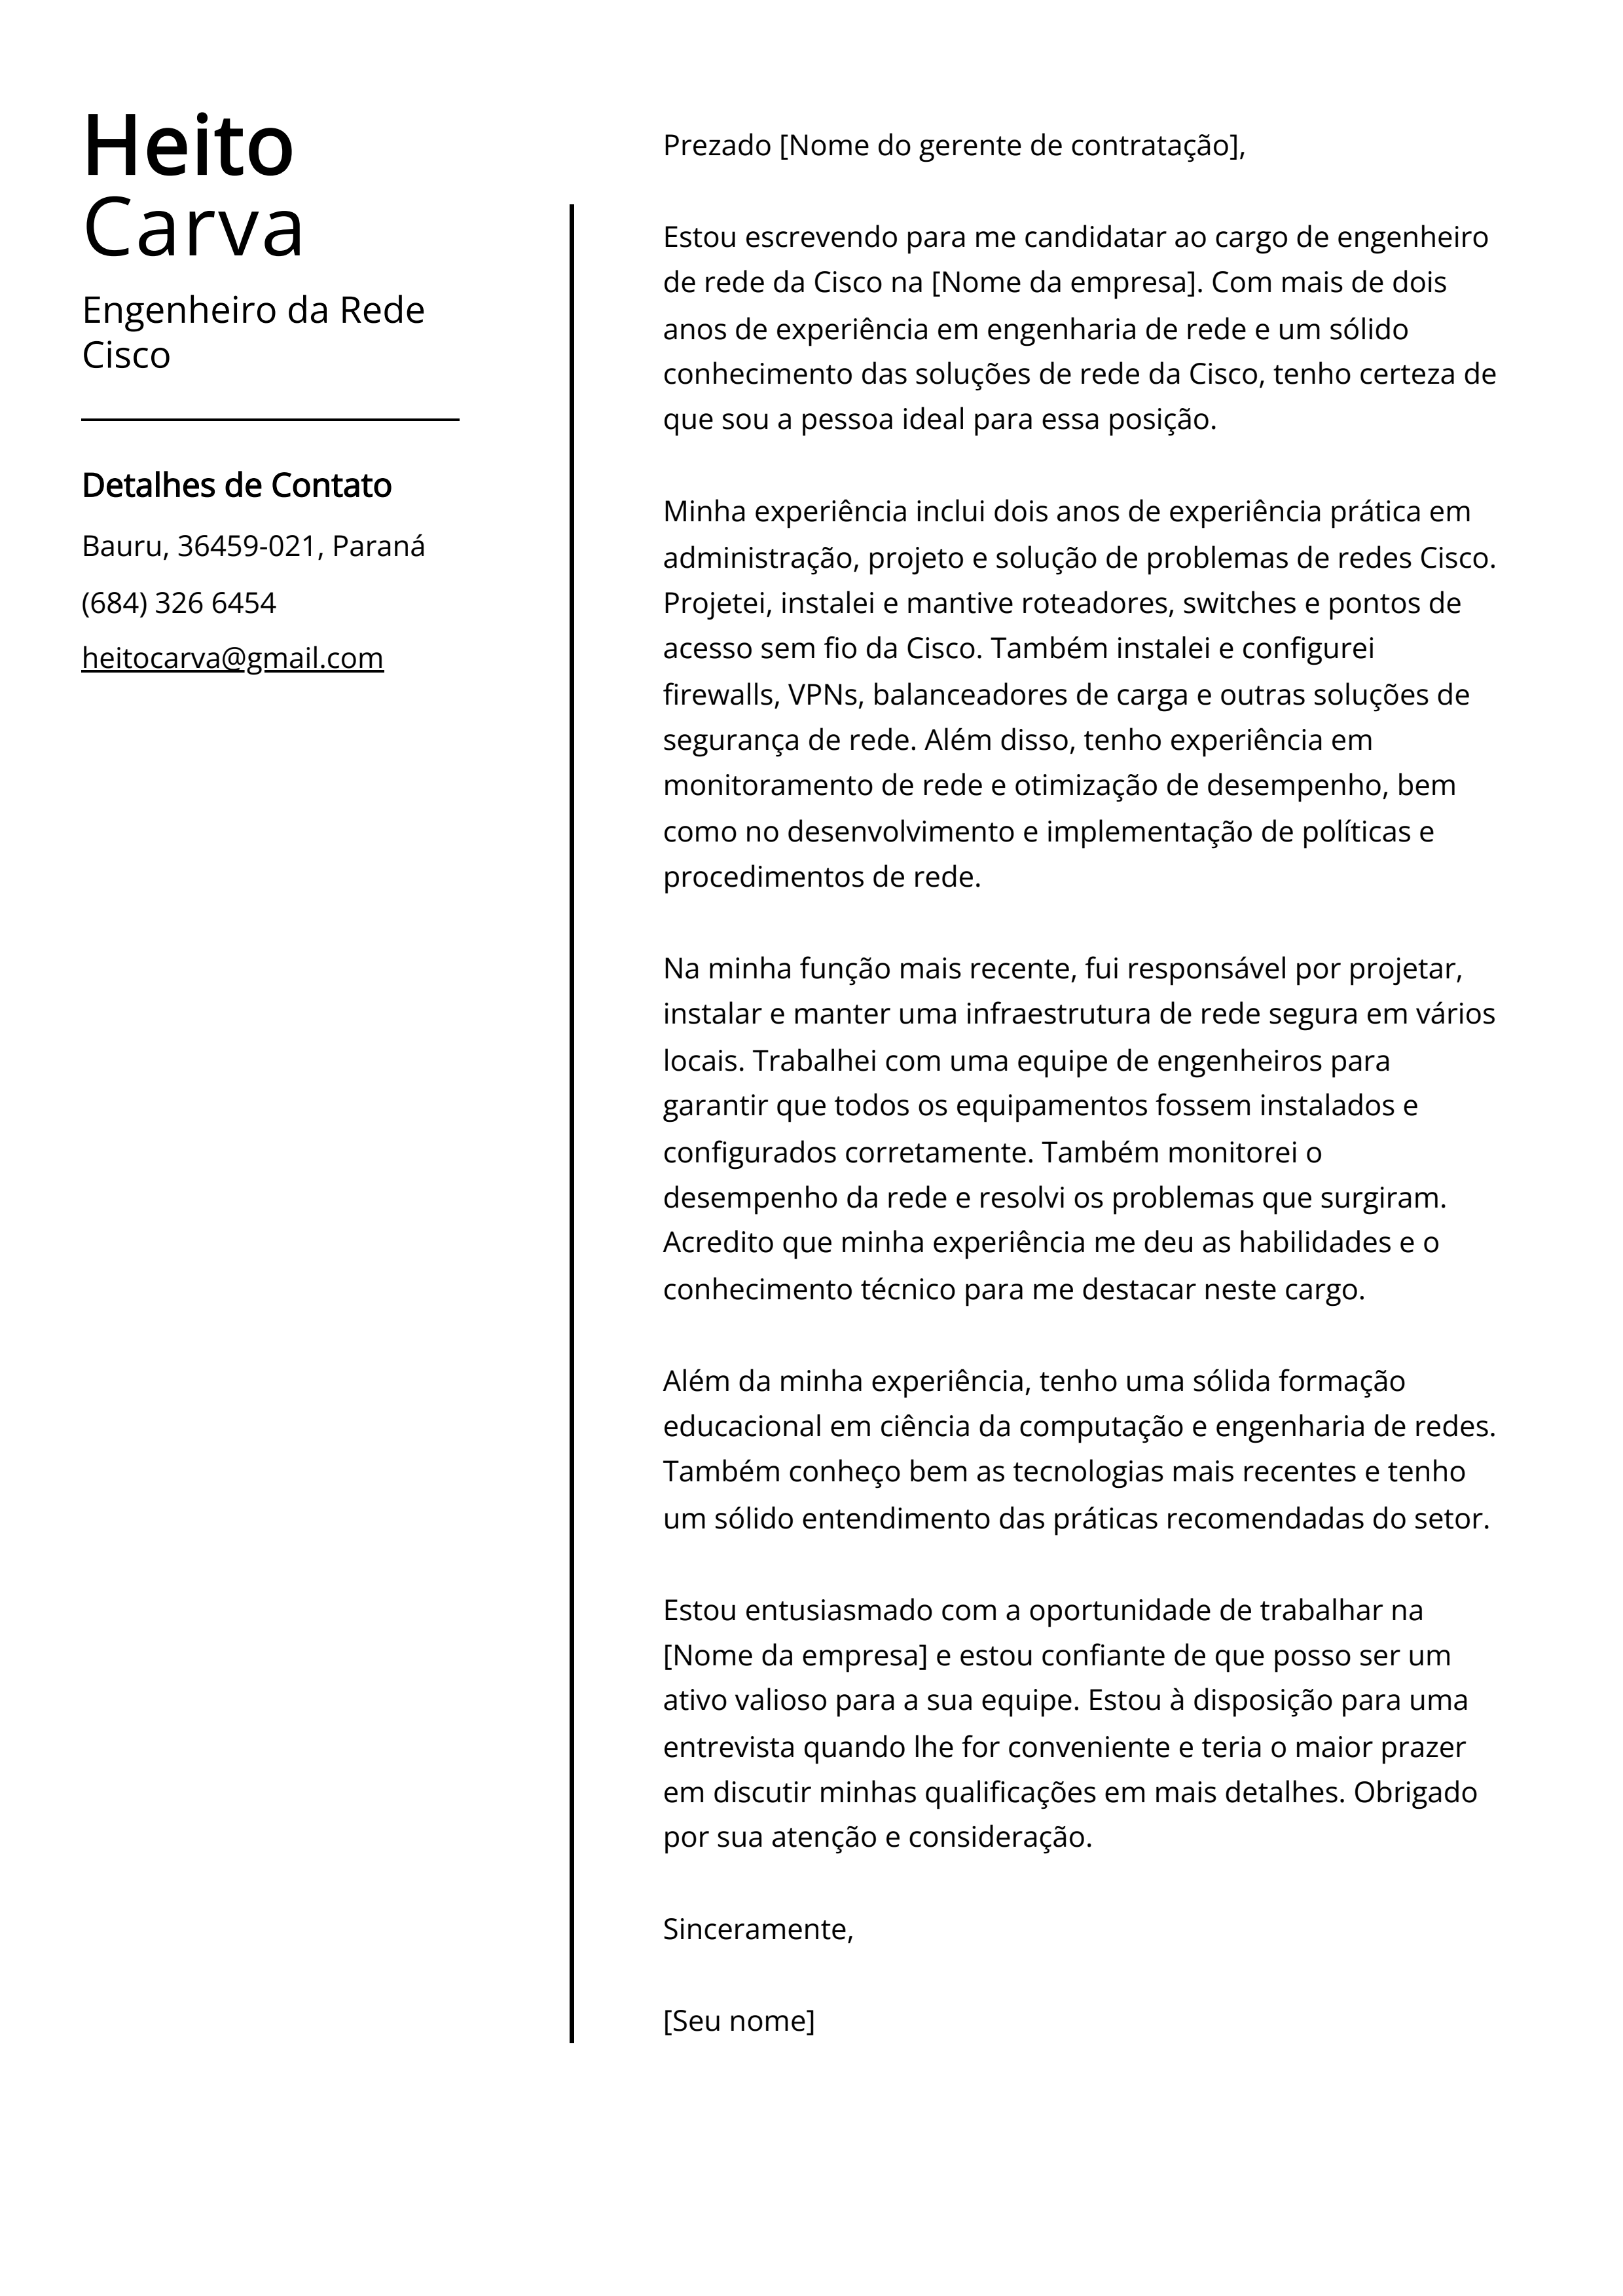 Exemplo de carta de apresentação do Engenheiro da Rede Cisco